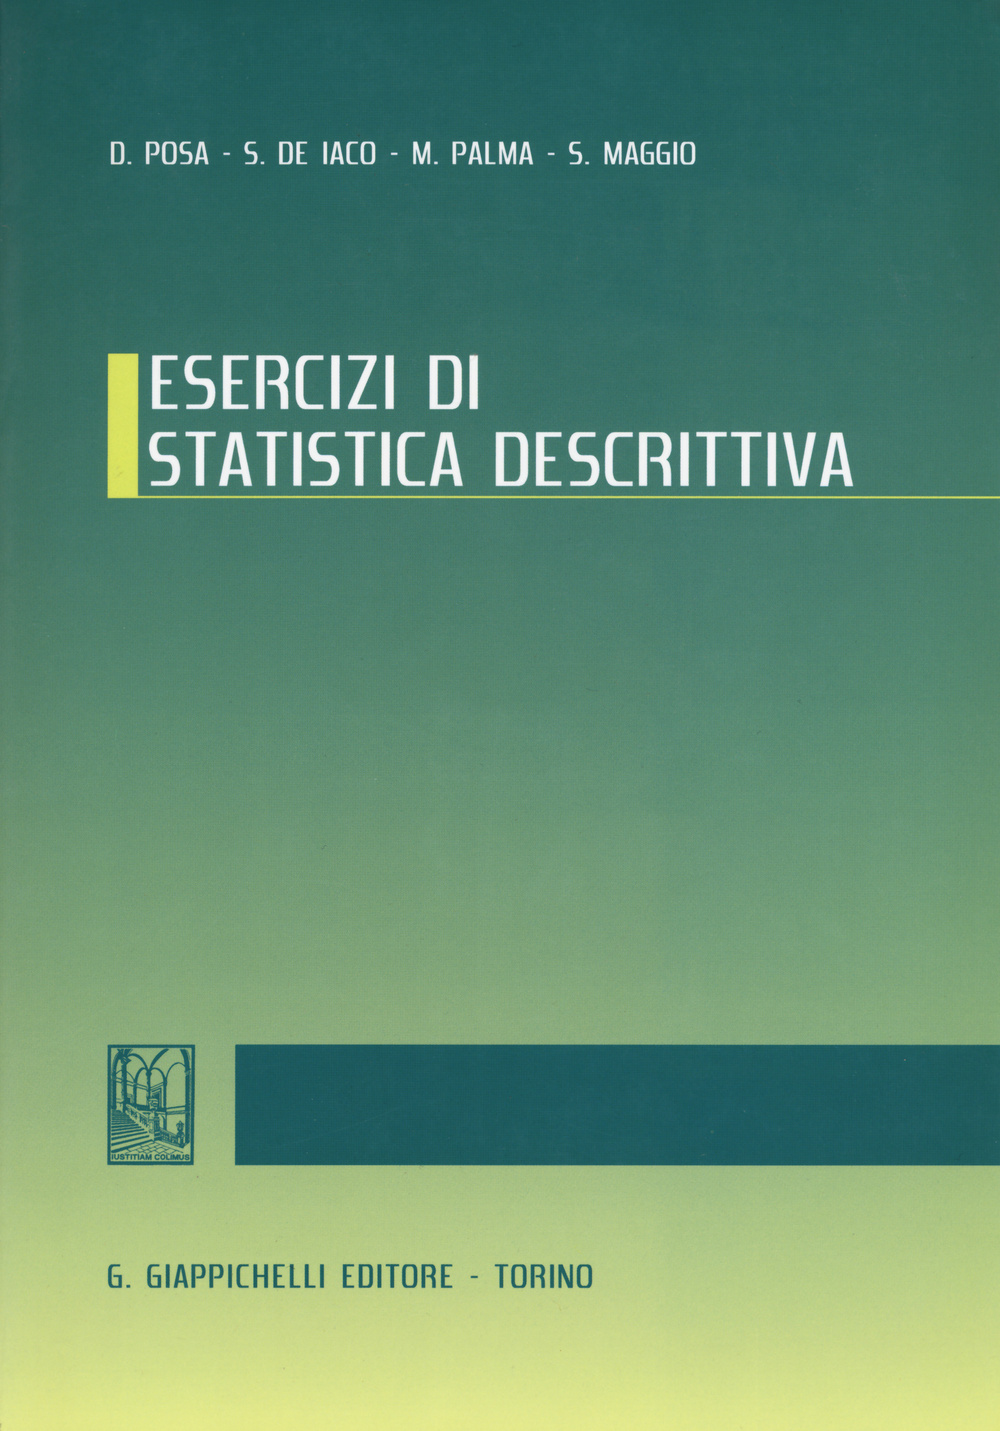 Image of Esercizi di statistica descrittiva